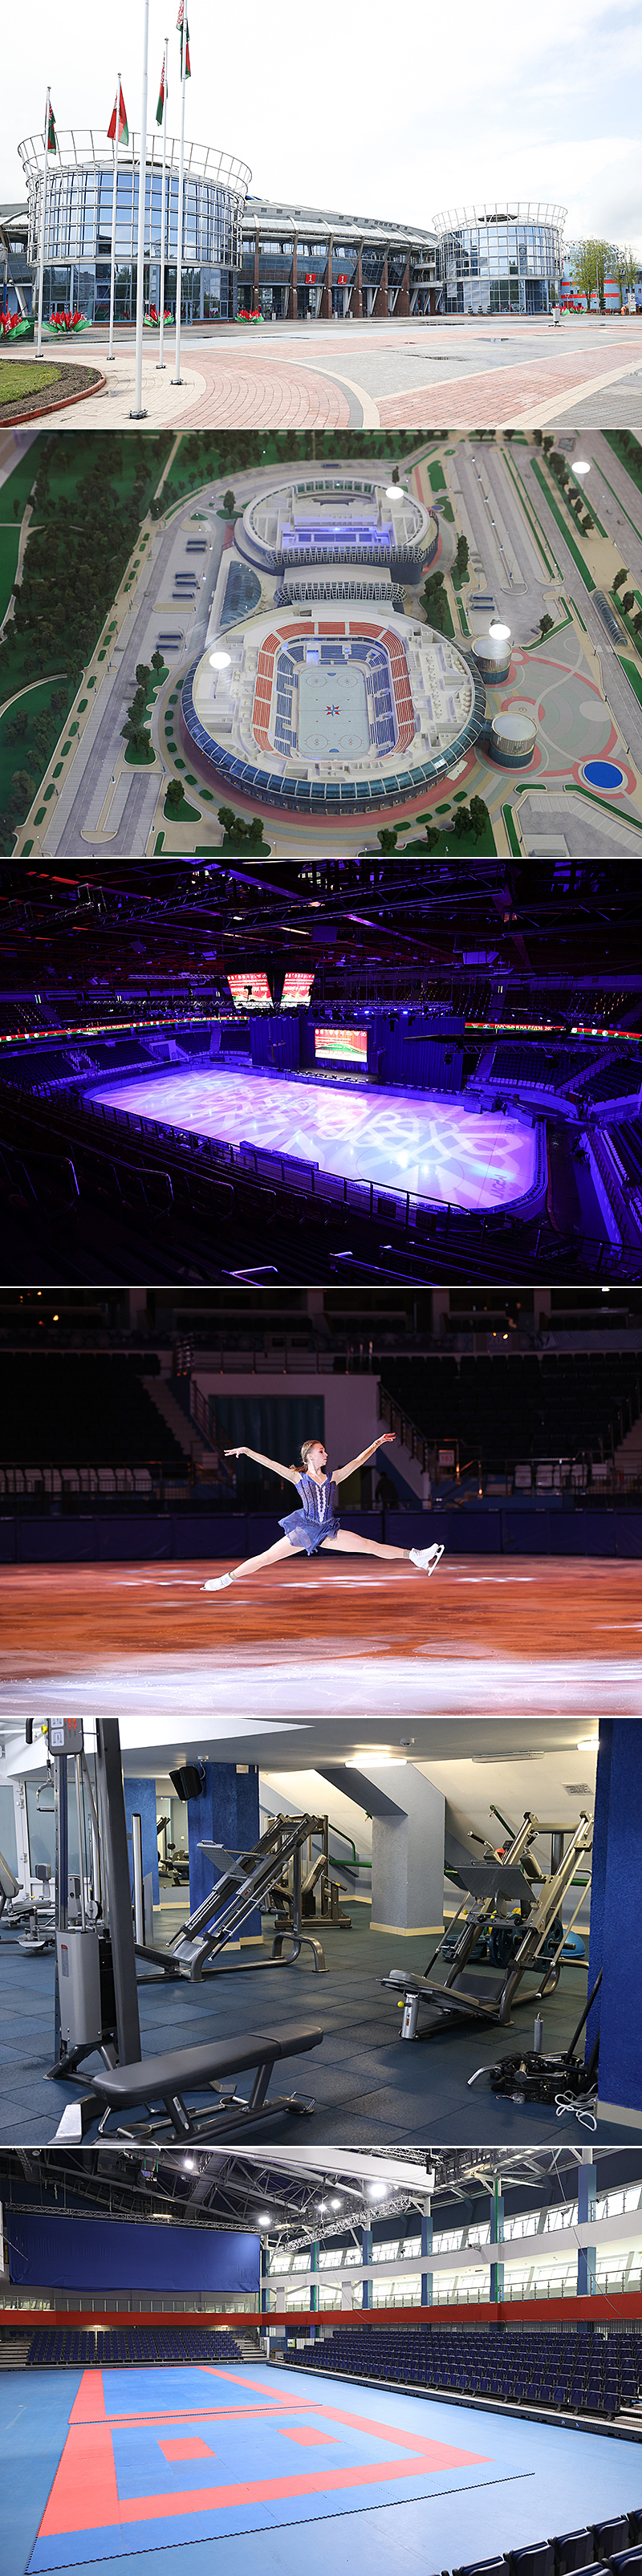 Chizhovka Arena, Minsk